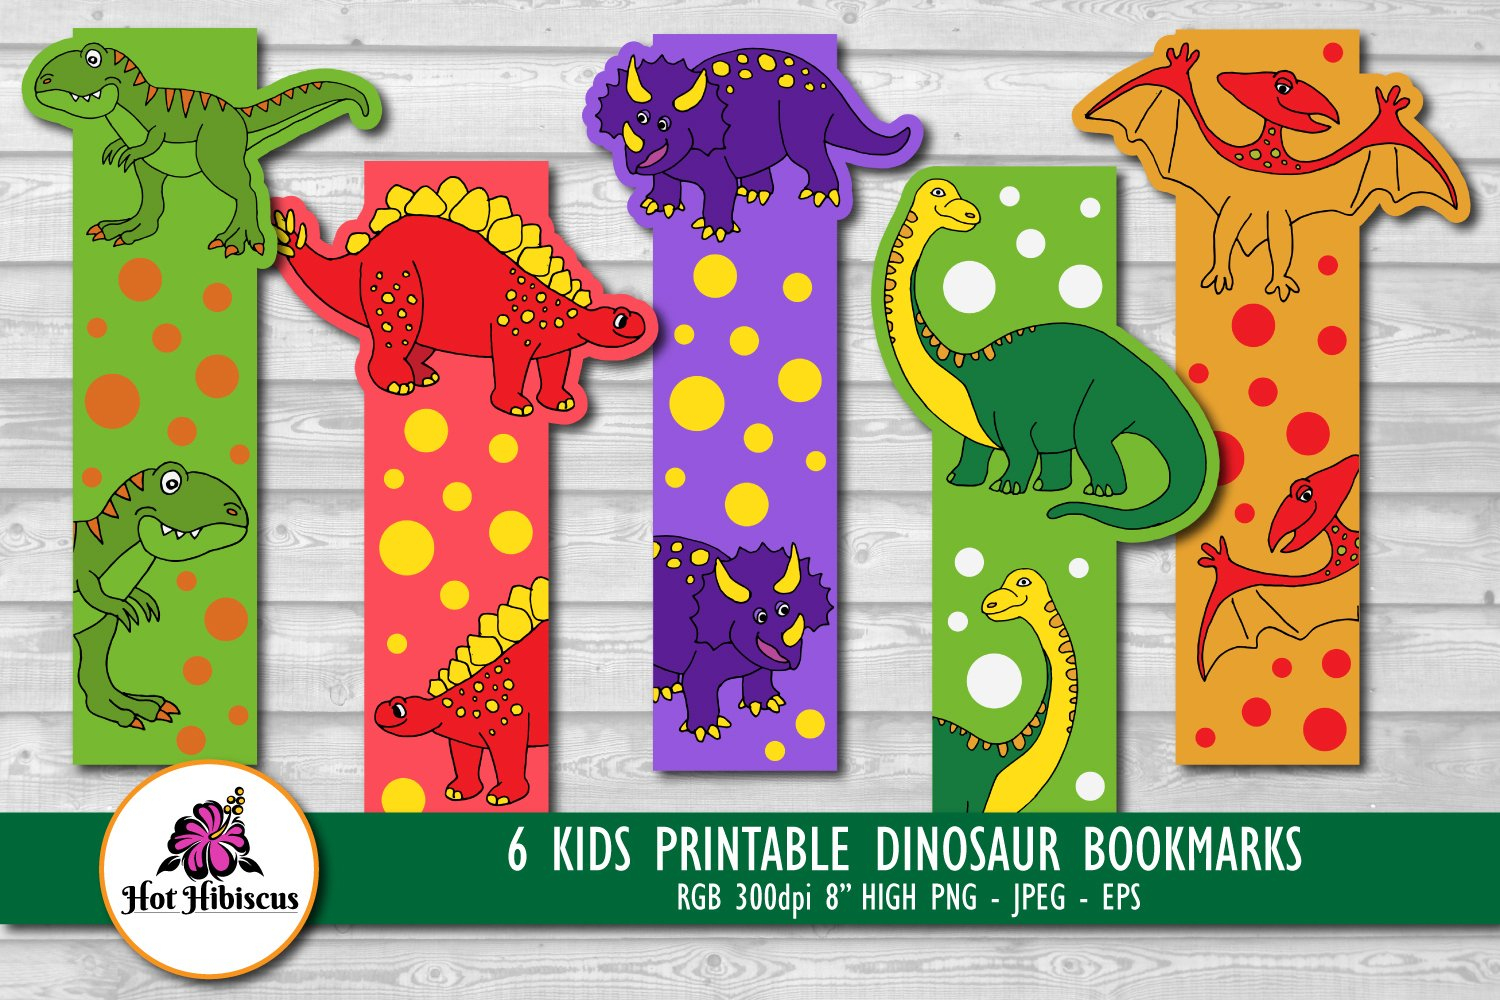 Printable Dinosaur Bookmarks, Cute Dino Bookmarks - Free Printable Dinosaur Bookmarks